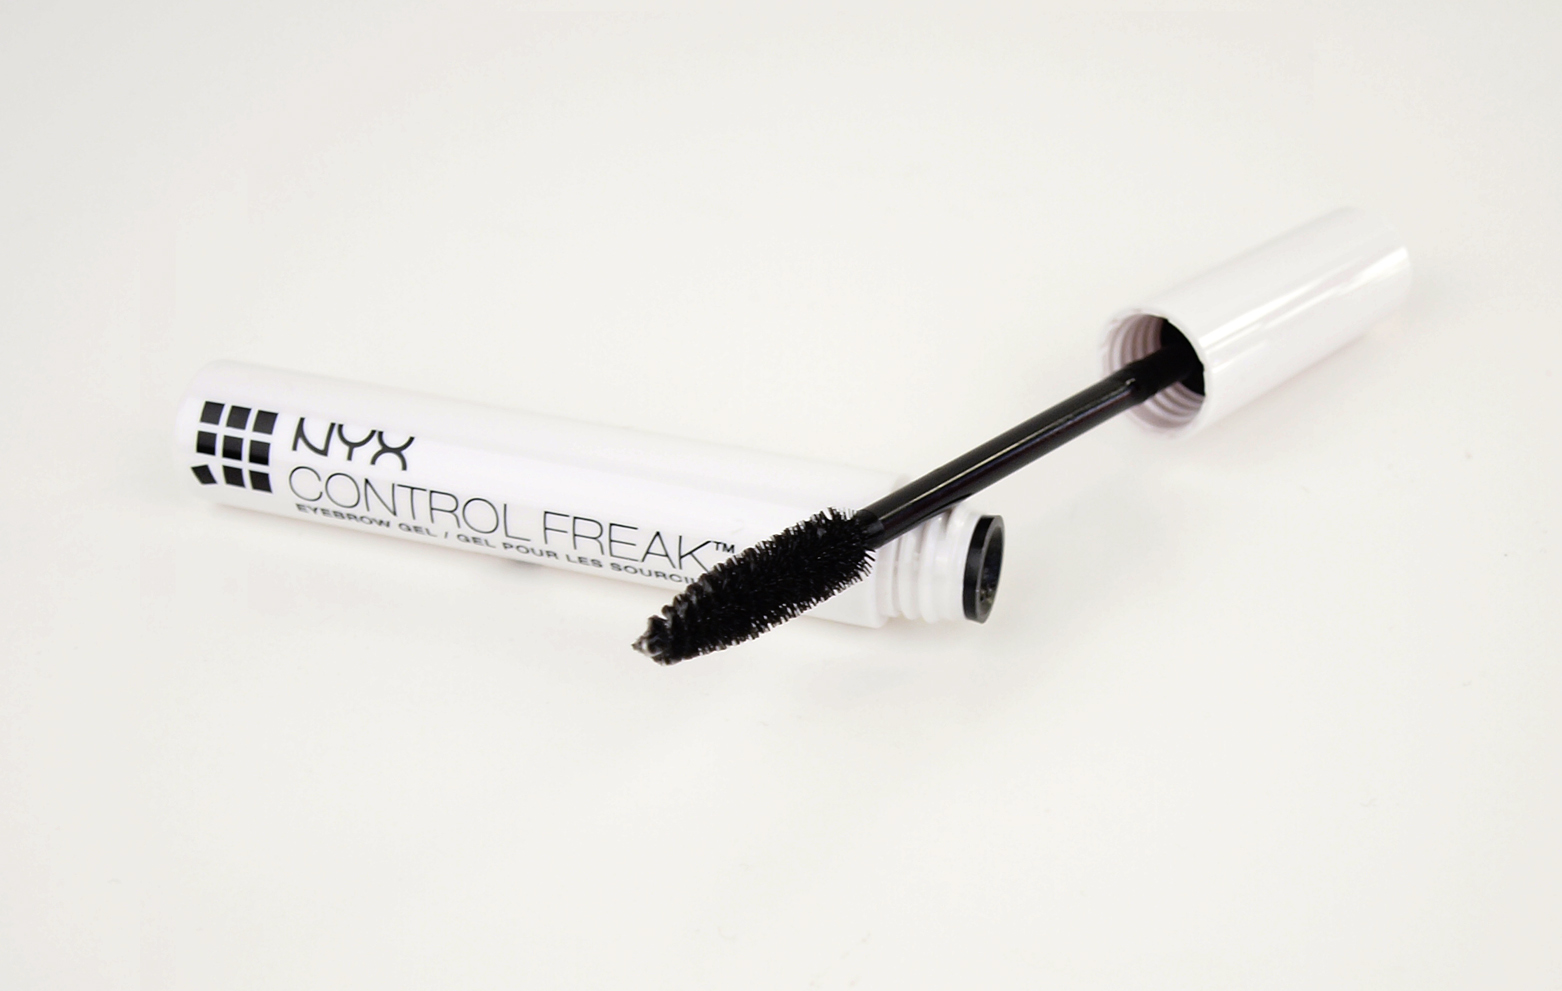 Nyx control freak eyebrow gel